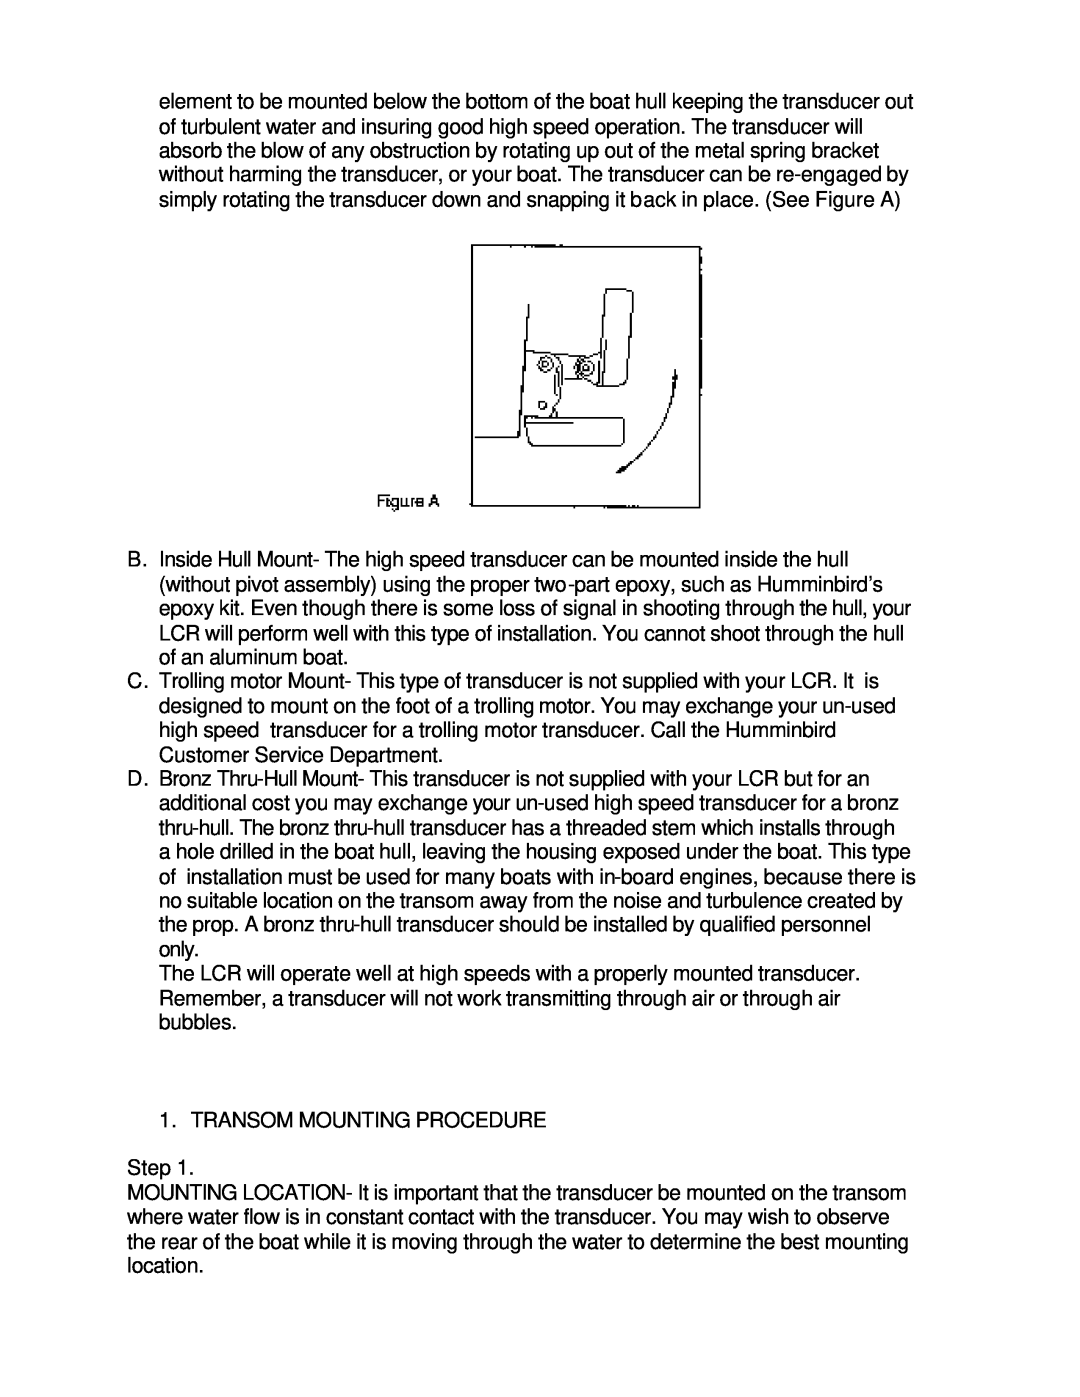 Humminbird LCR4 ID manual TRANSOM MOUNTING PROCEDURE Step 